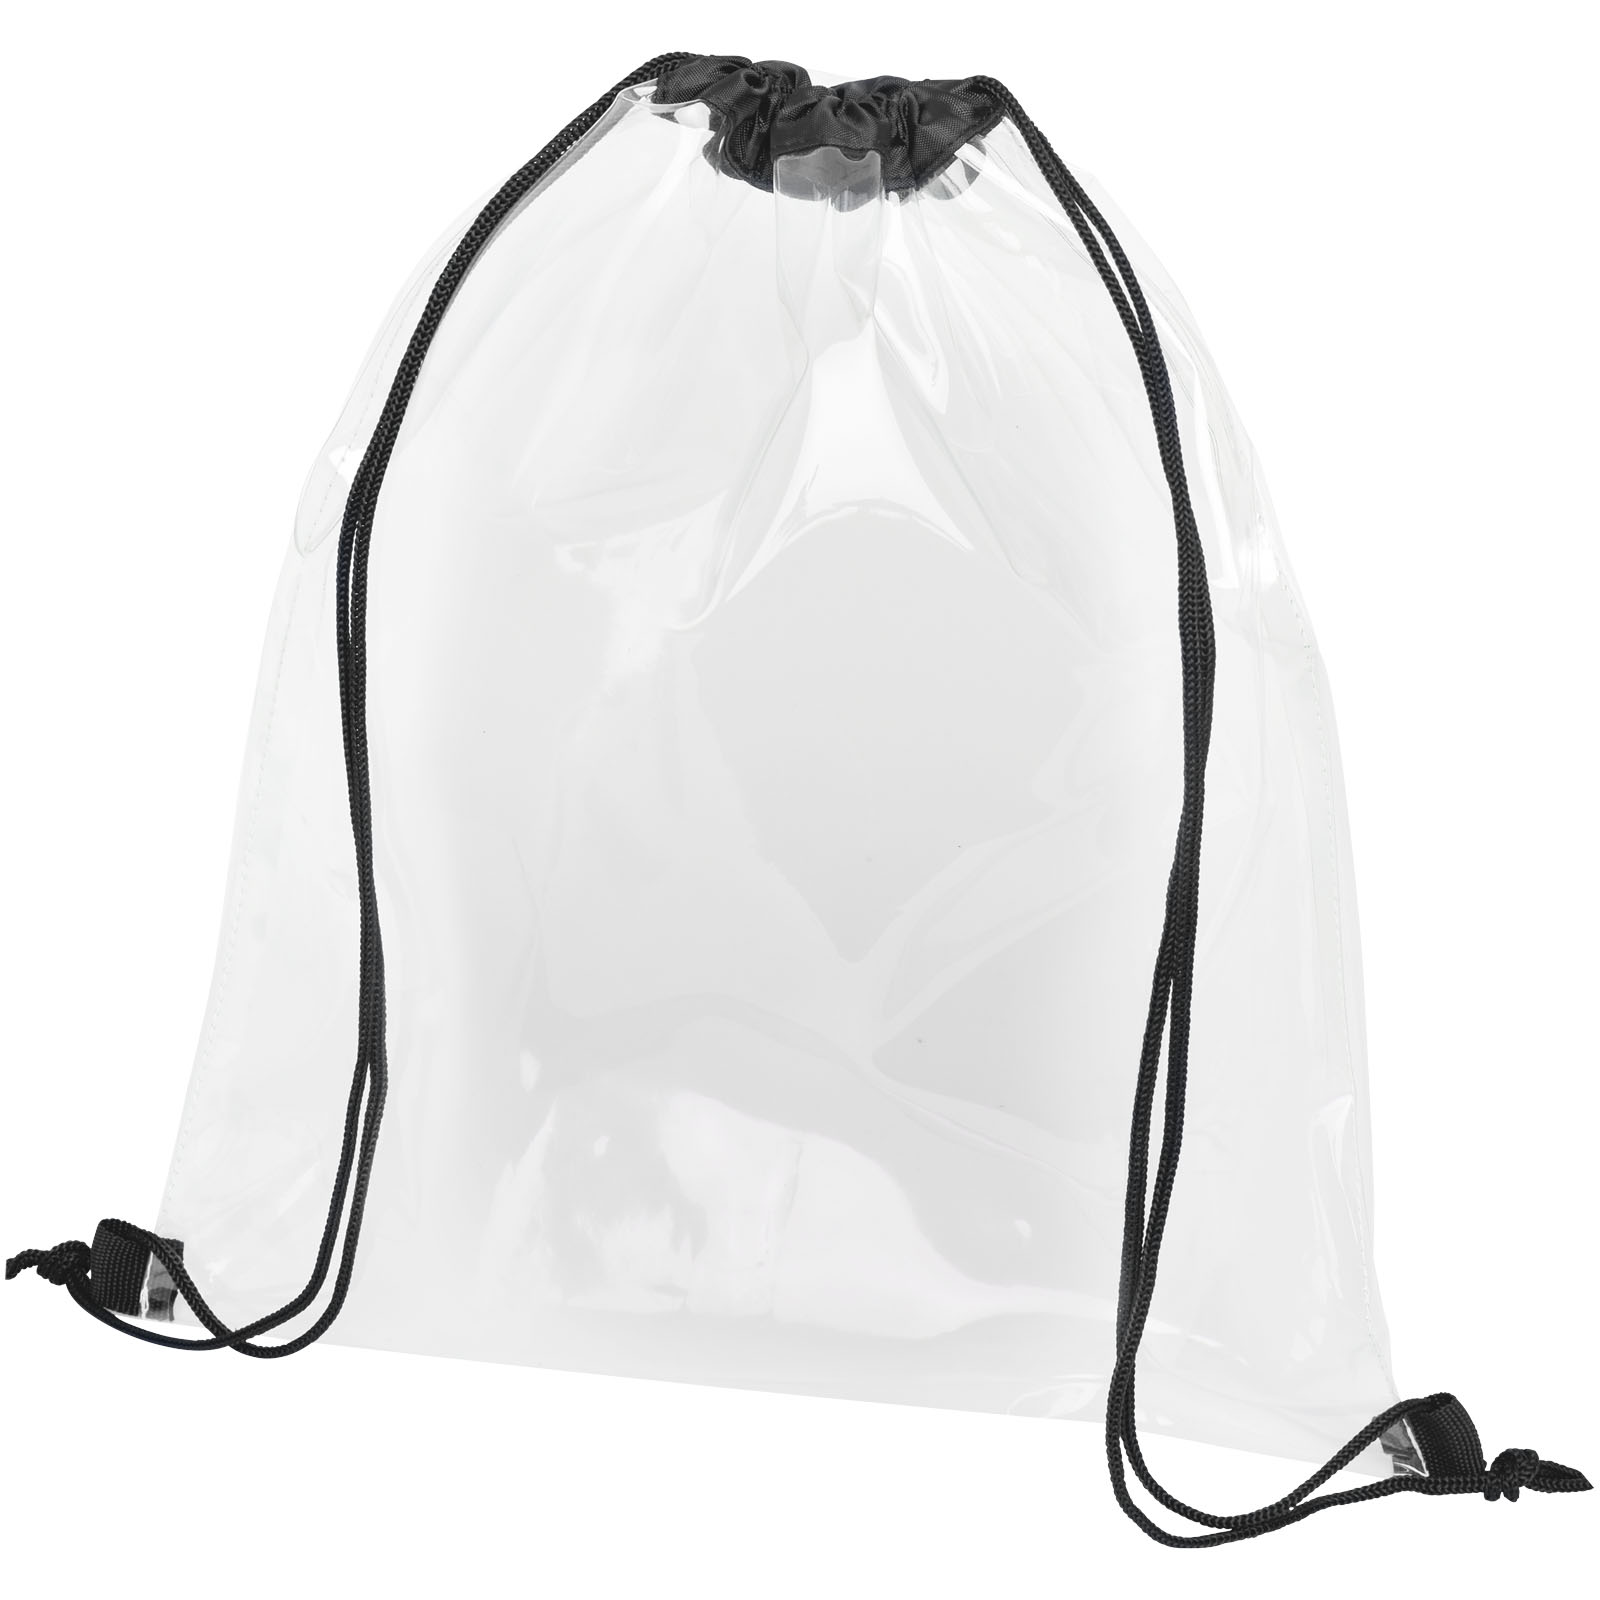 Advertising Drawstring Bags - Lancaster transparent drawstring bag 5L - 0